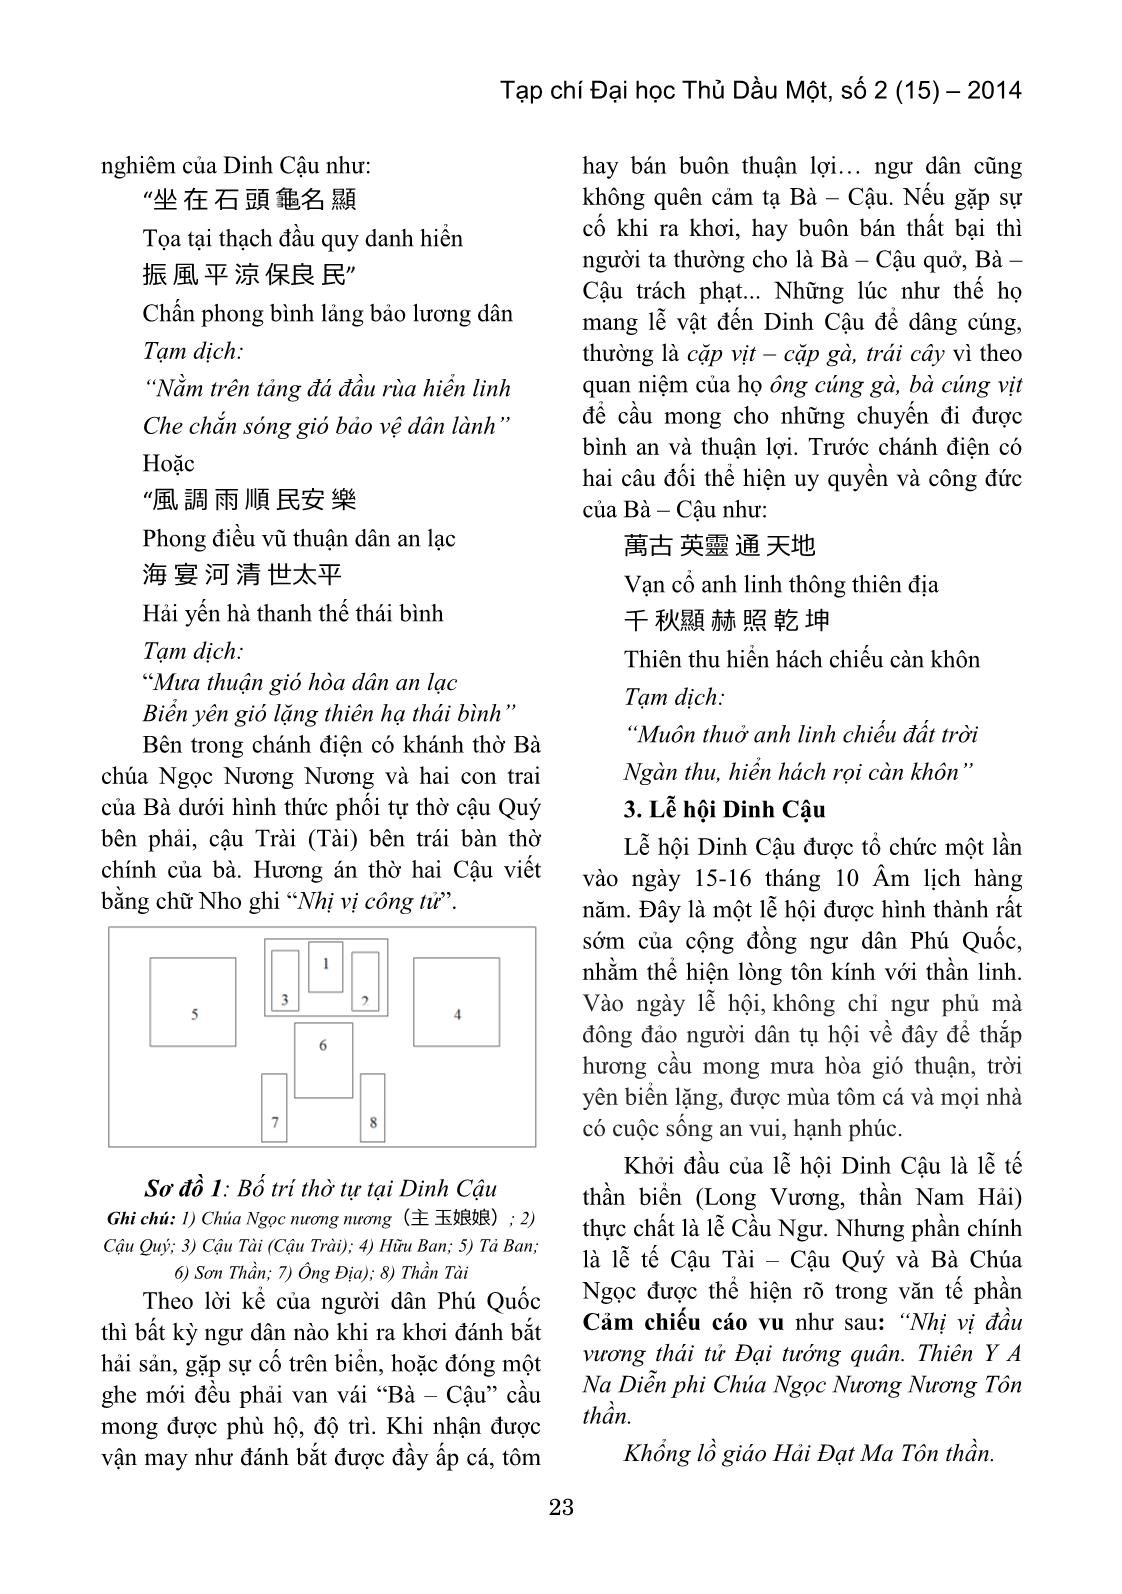 Sự thờ cúng ở Dinh Cậu – huyện đảo Phú Quốc, tỉnh Kiên Giang trang 3